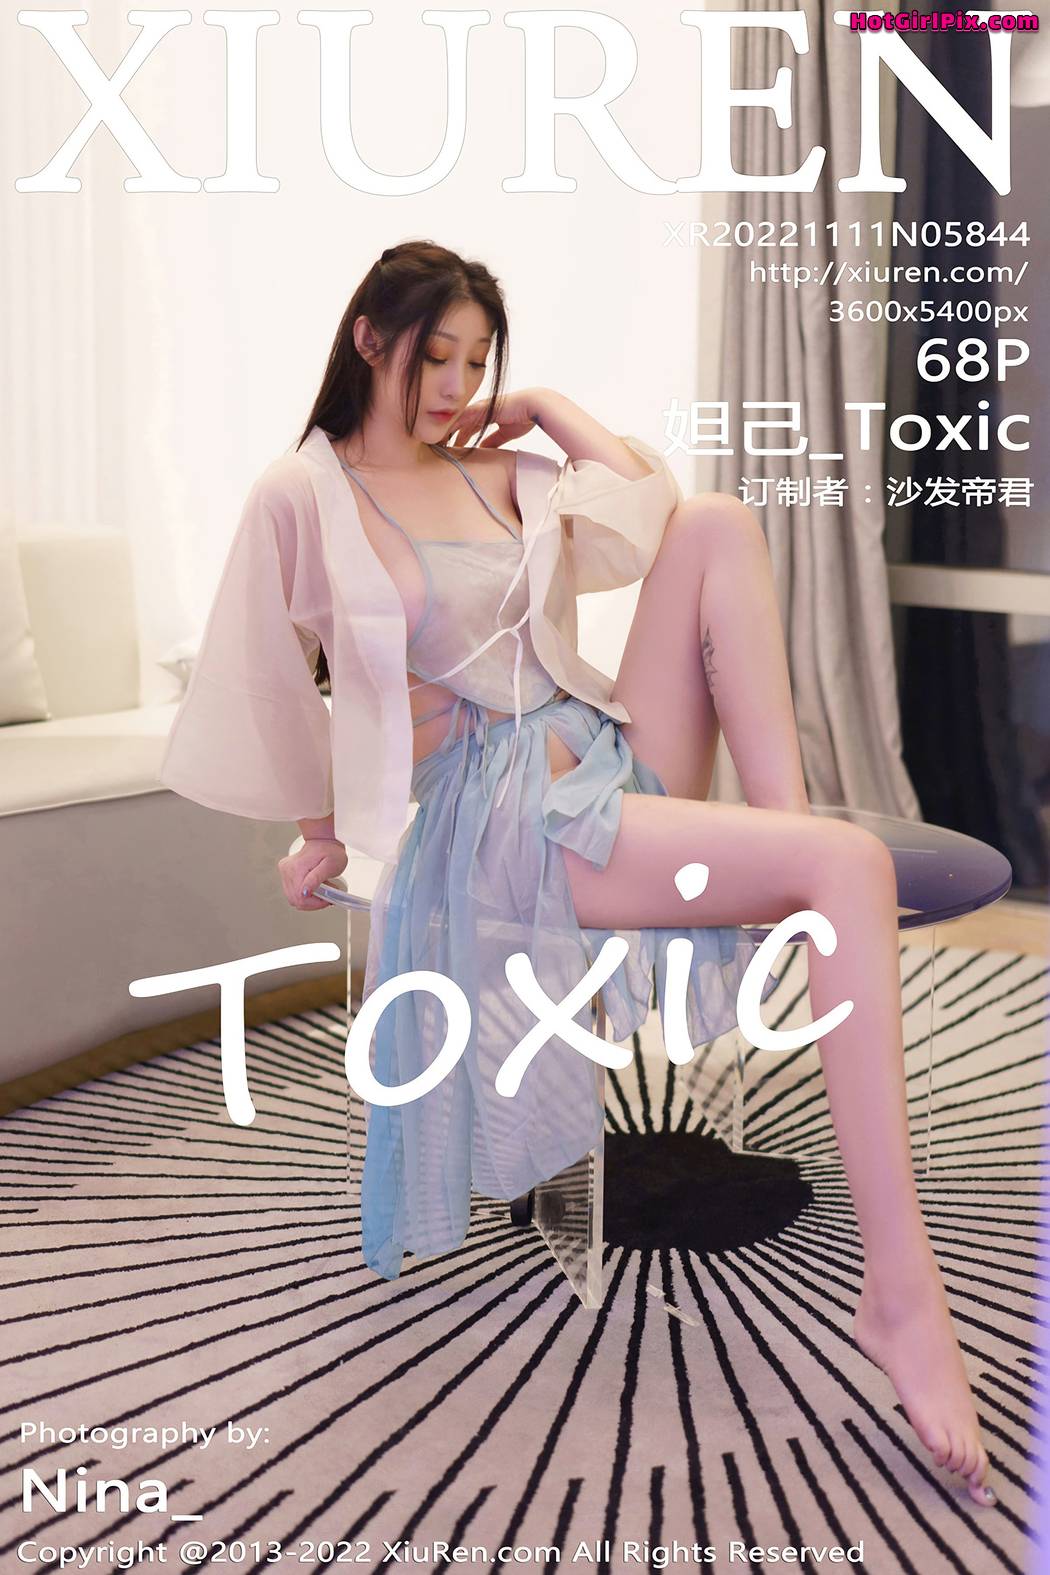 [XIUREN] No.5844 Daji_Toxic 妲己_Toxic Cover Photo